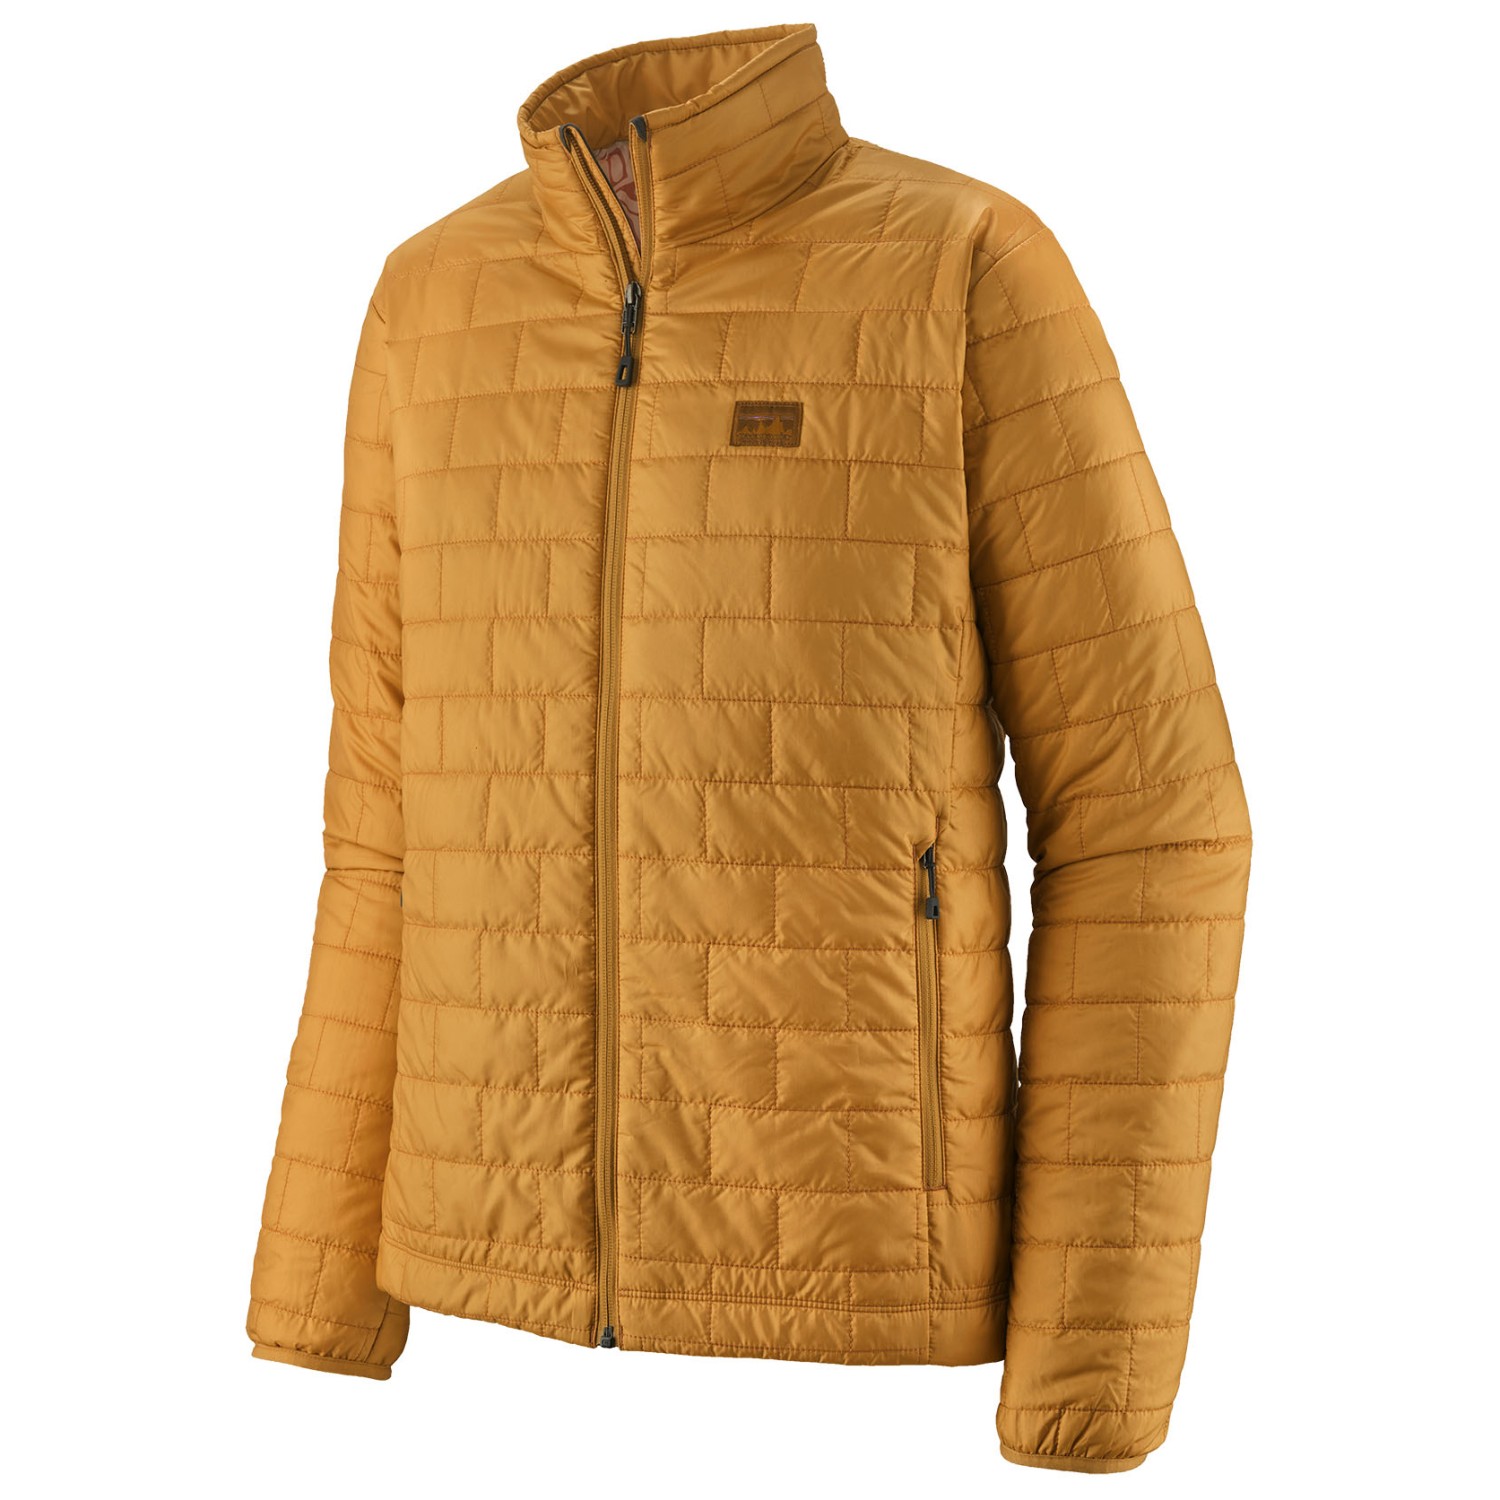 Куртка из синтетического волокна Patagonia Nano Puff, цвет Pufferfish Gold цена и фото